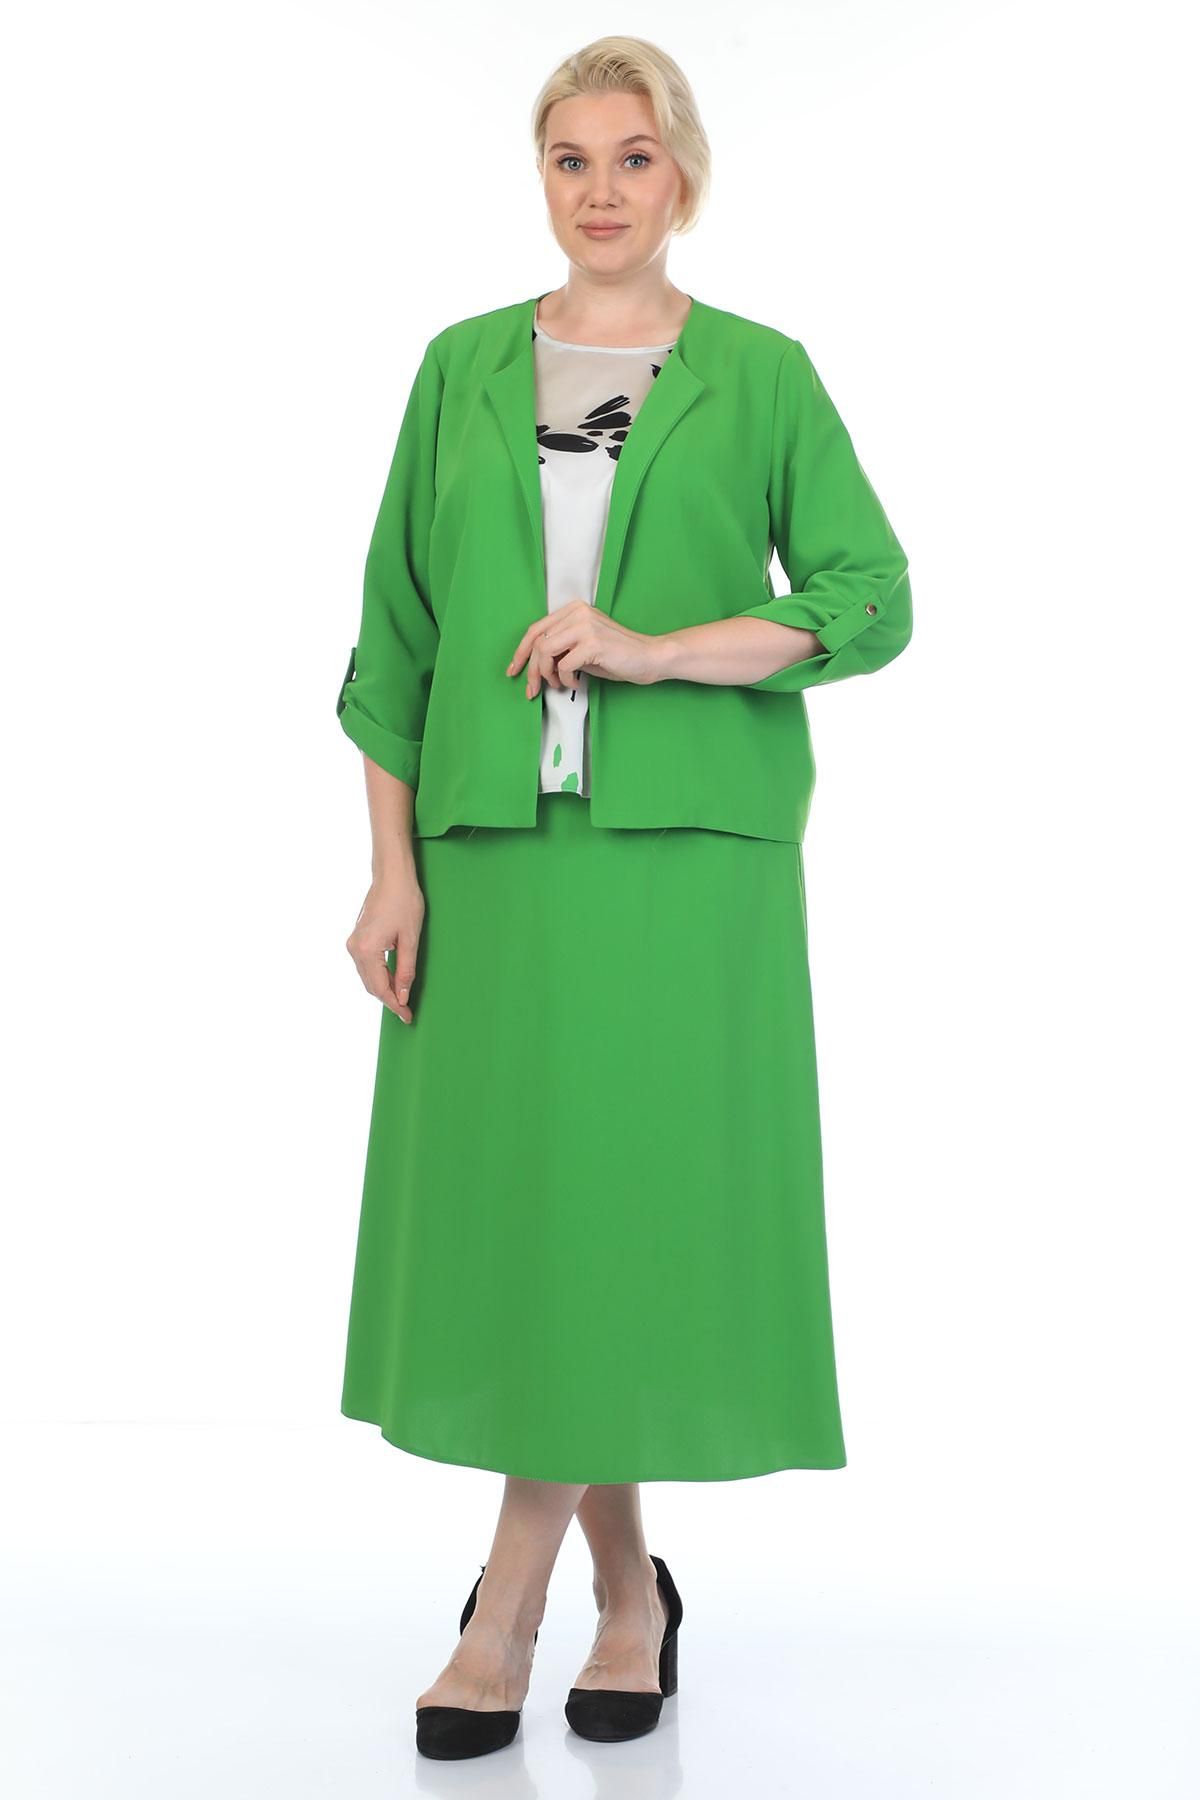 Estee 6017xl GREEN Plus Size Women Suit | Dosso Dossi